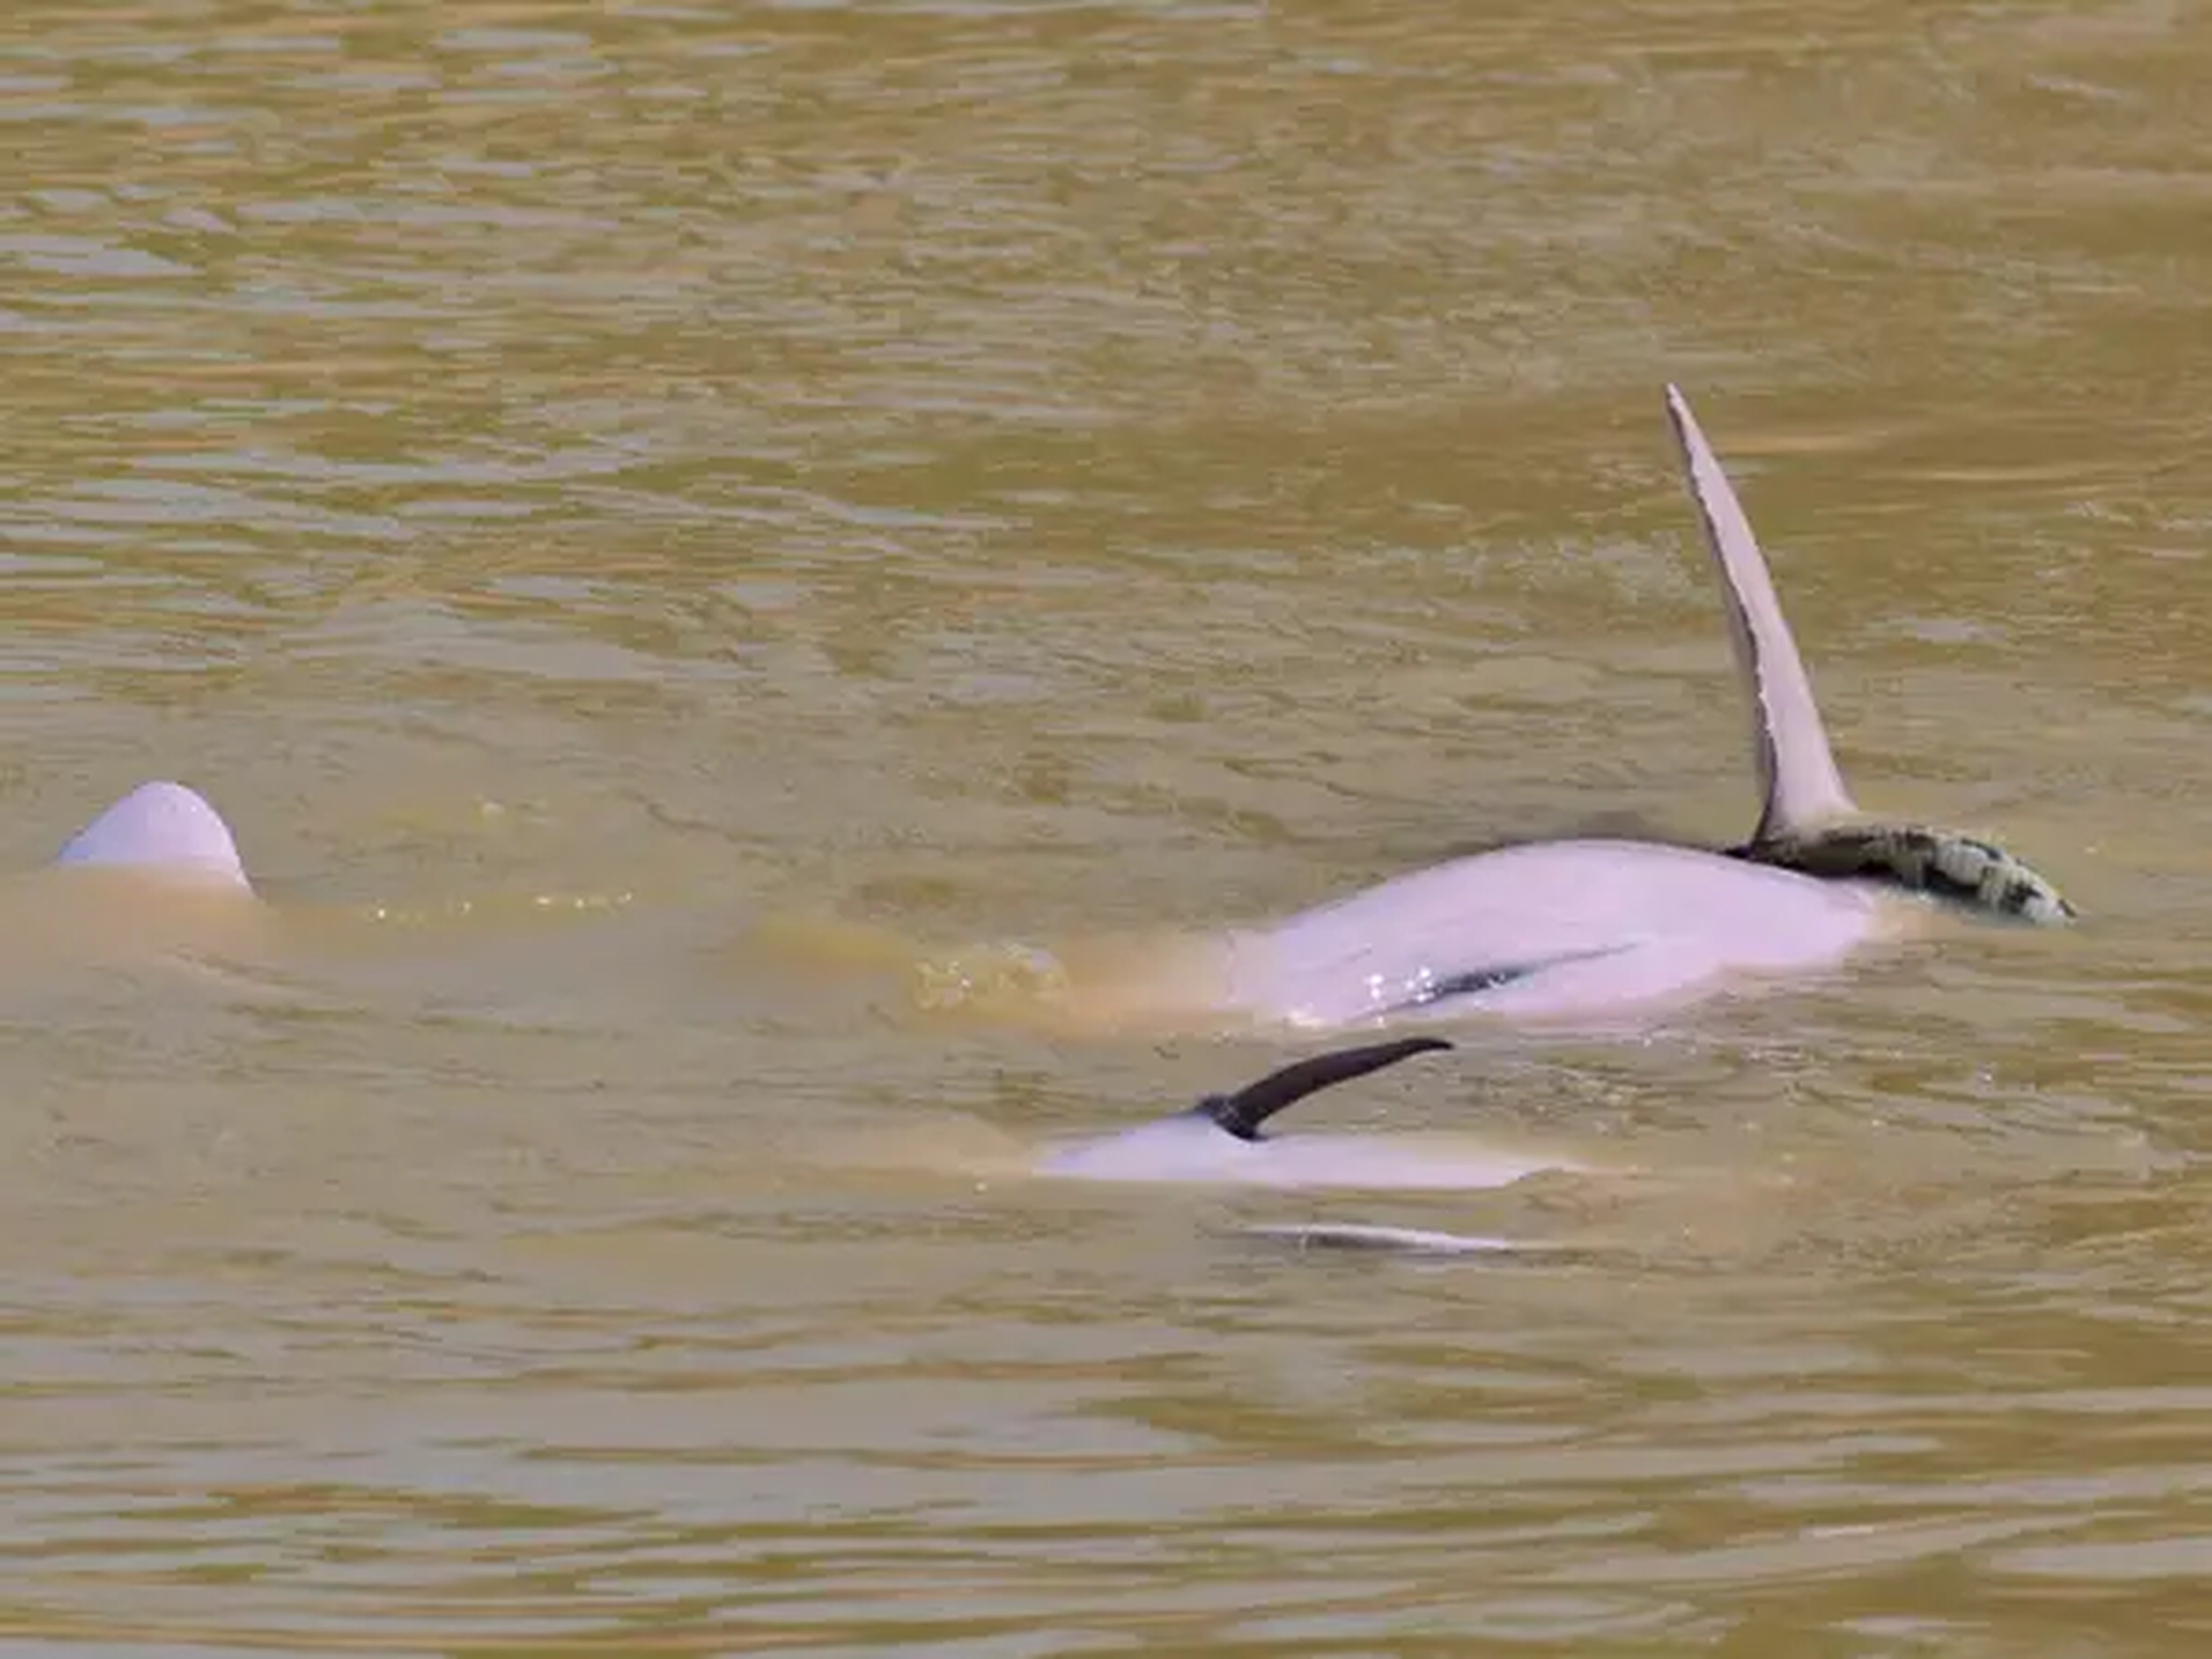 Un caso de interacción lúdica entre delfines de río bolivianos y una anaconda de la región.